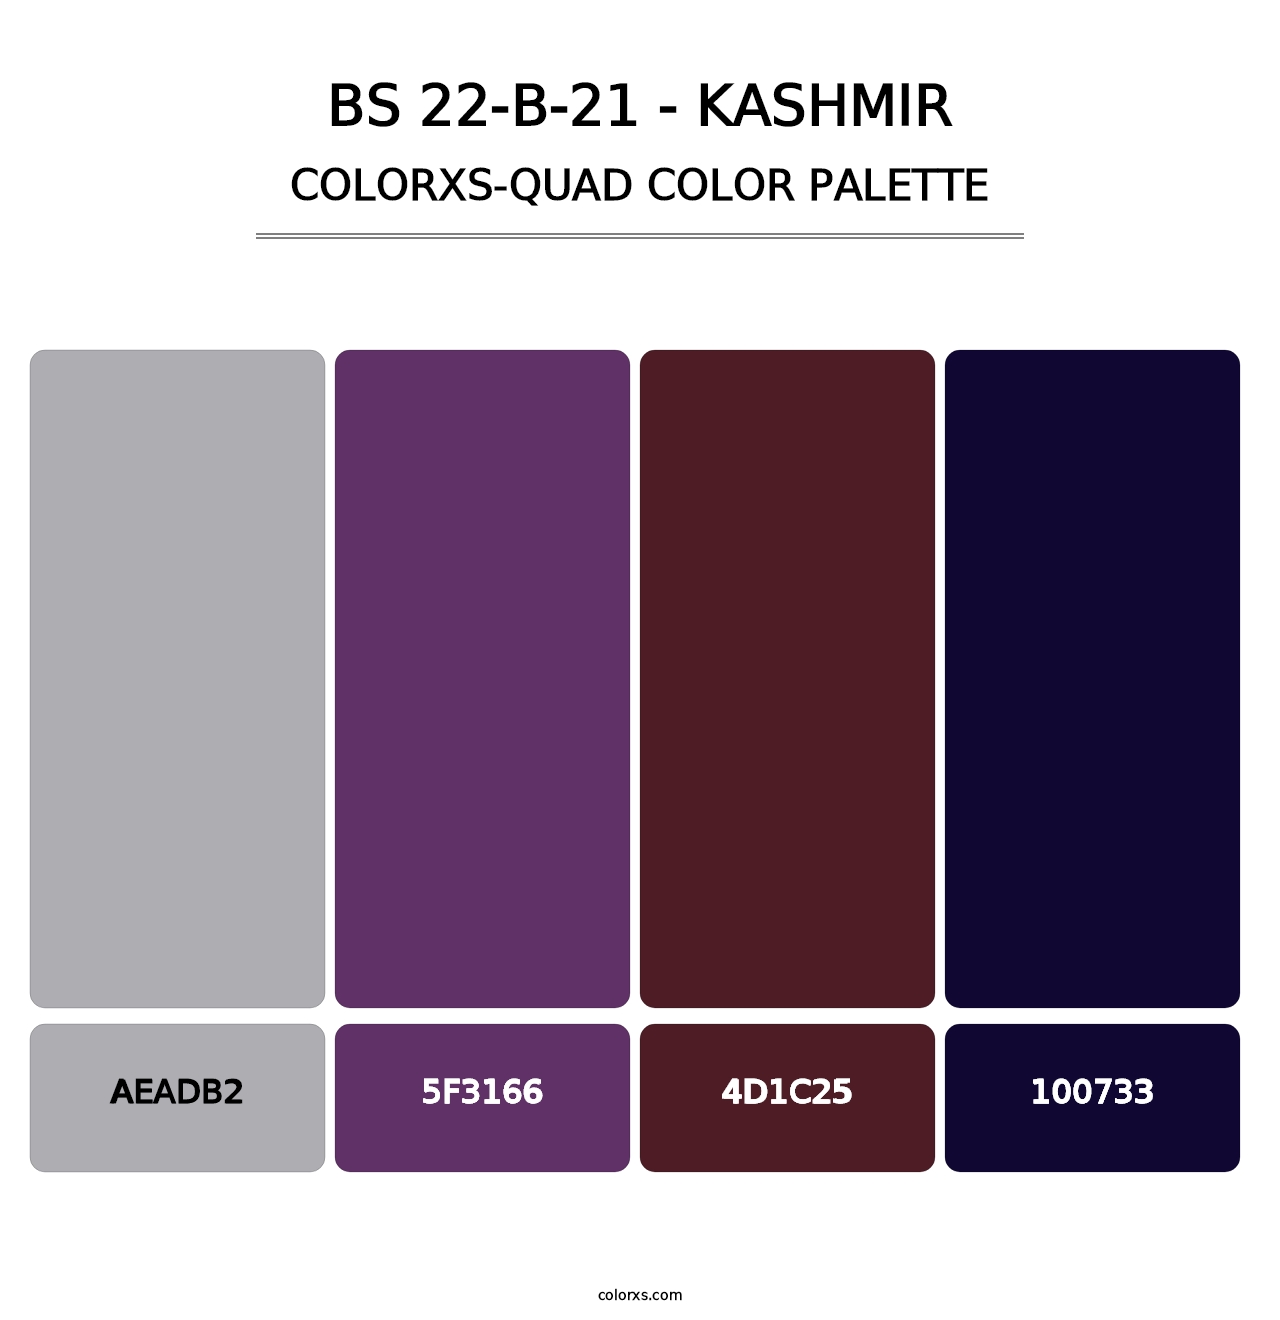 BS 22-B-21 - Kashmir - Colorxs Quad Palette